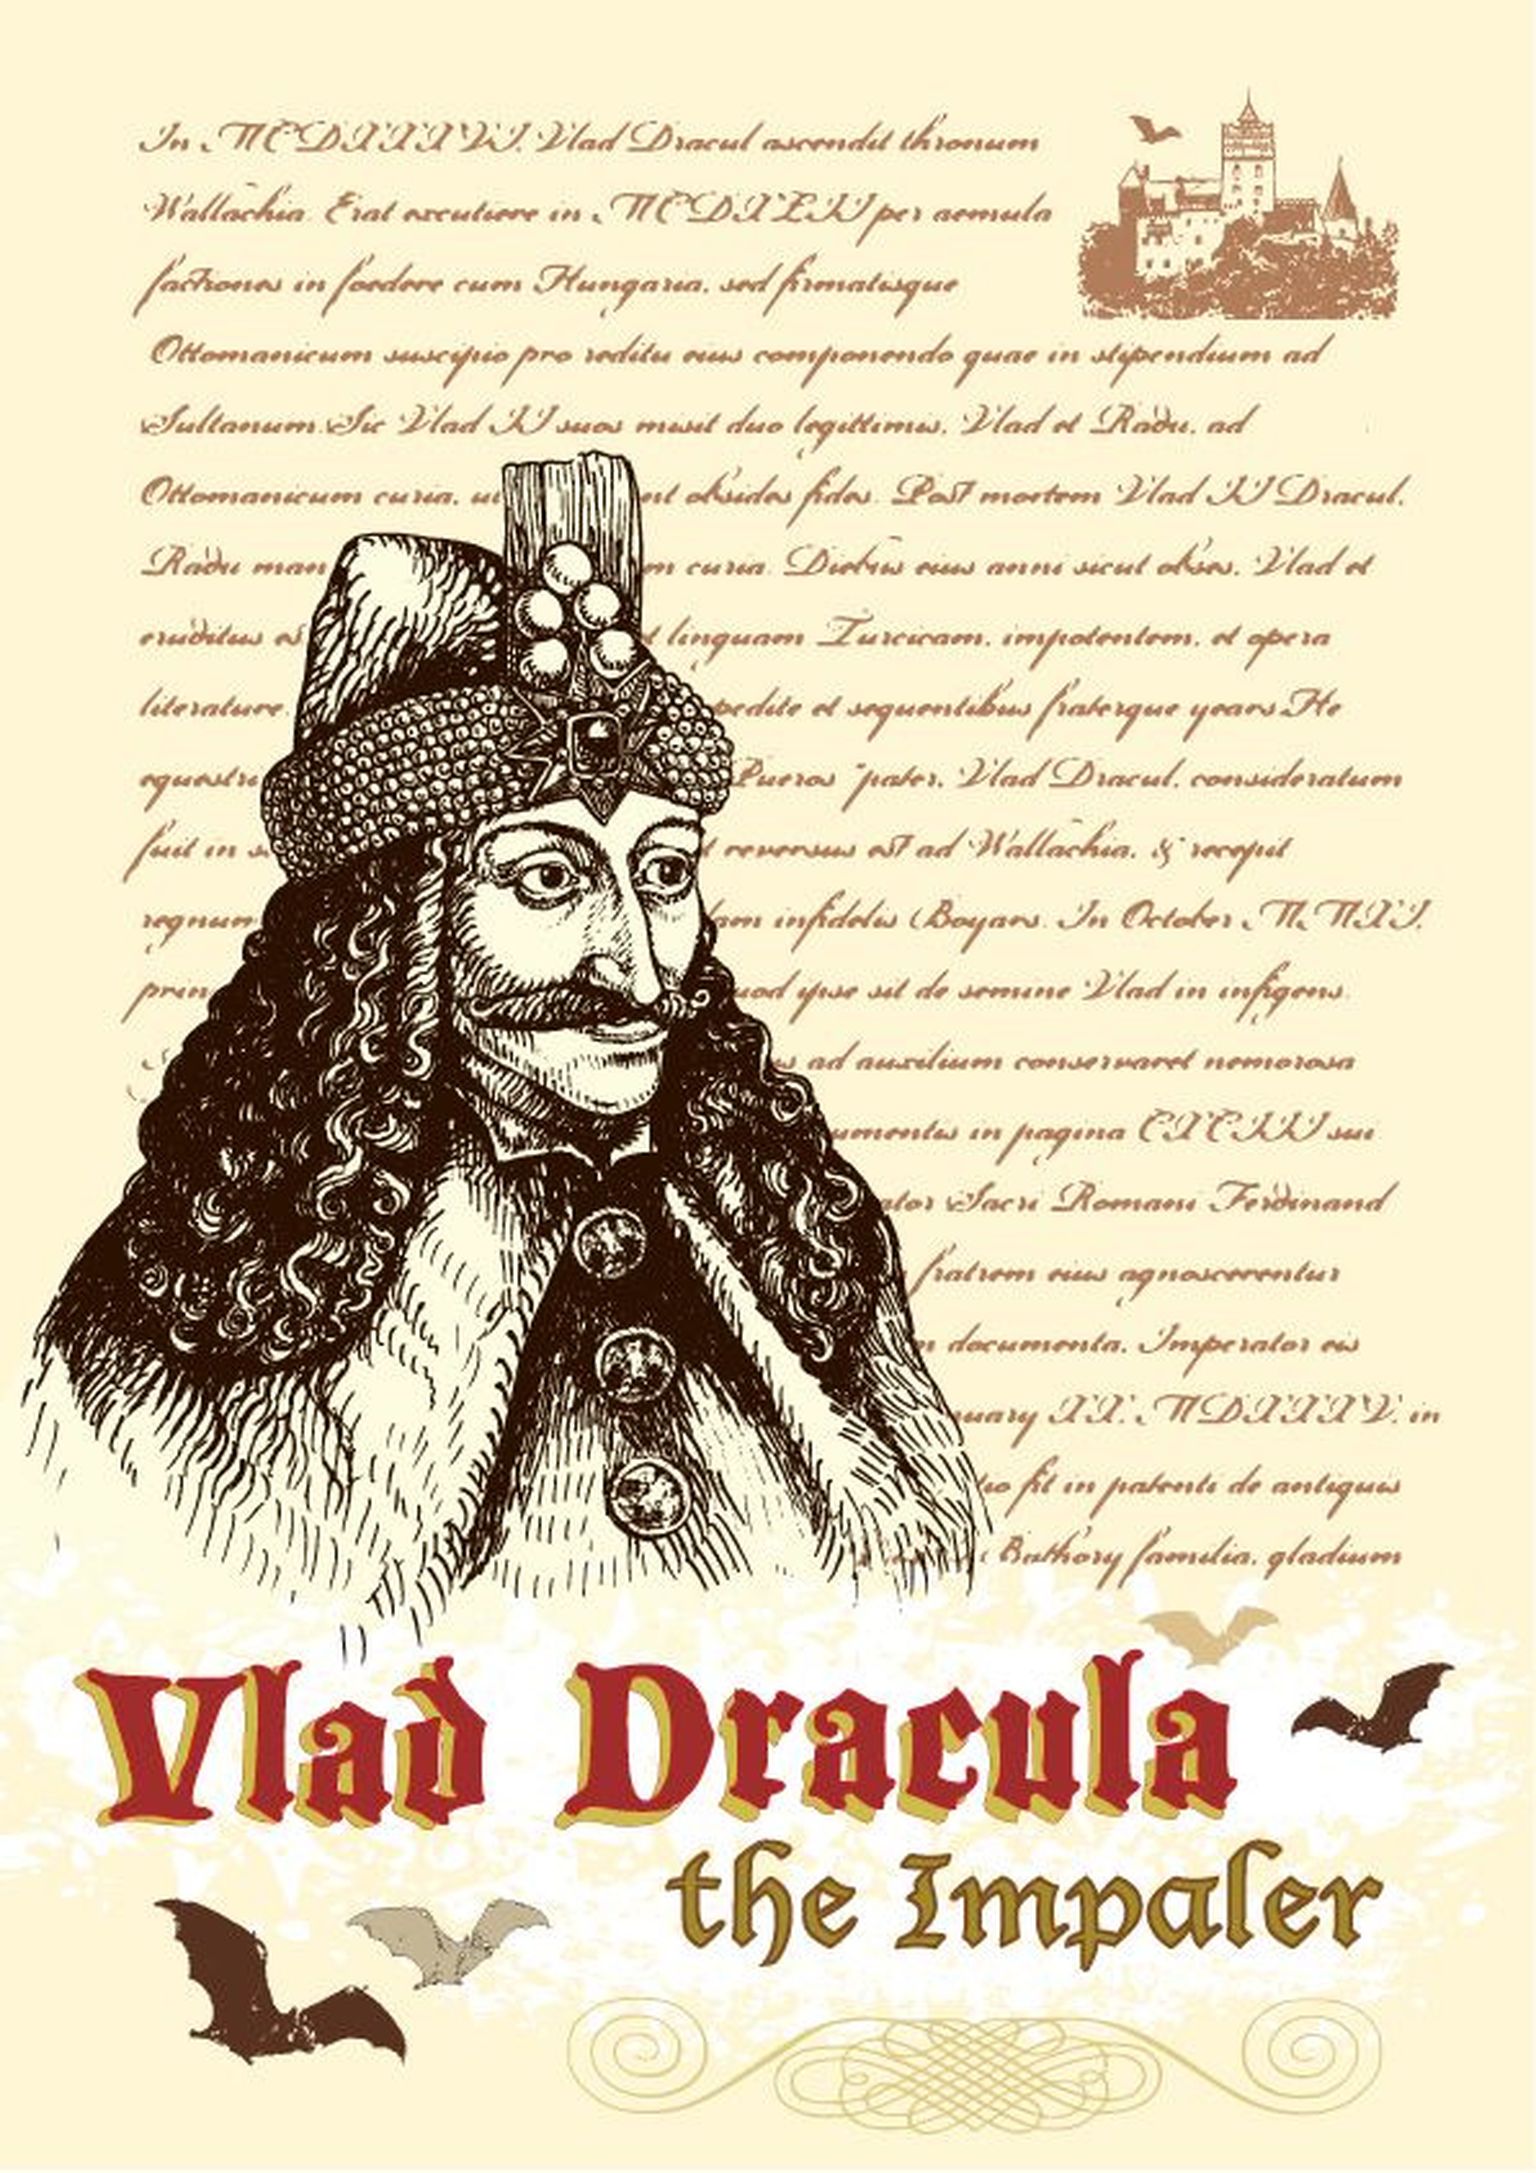 Vald III Dracula ehk Vlad Teivastaja, kes oli Valahhia vürst